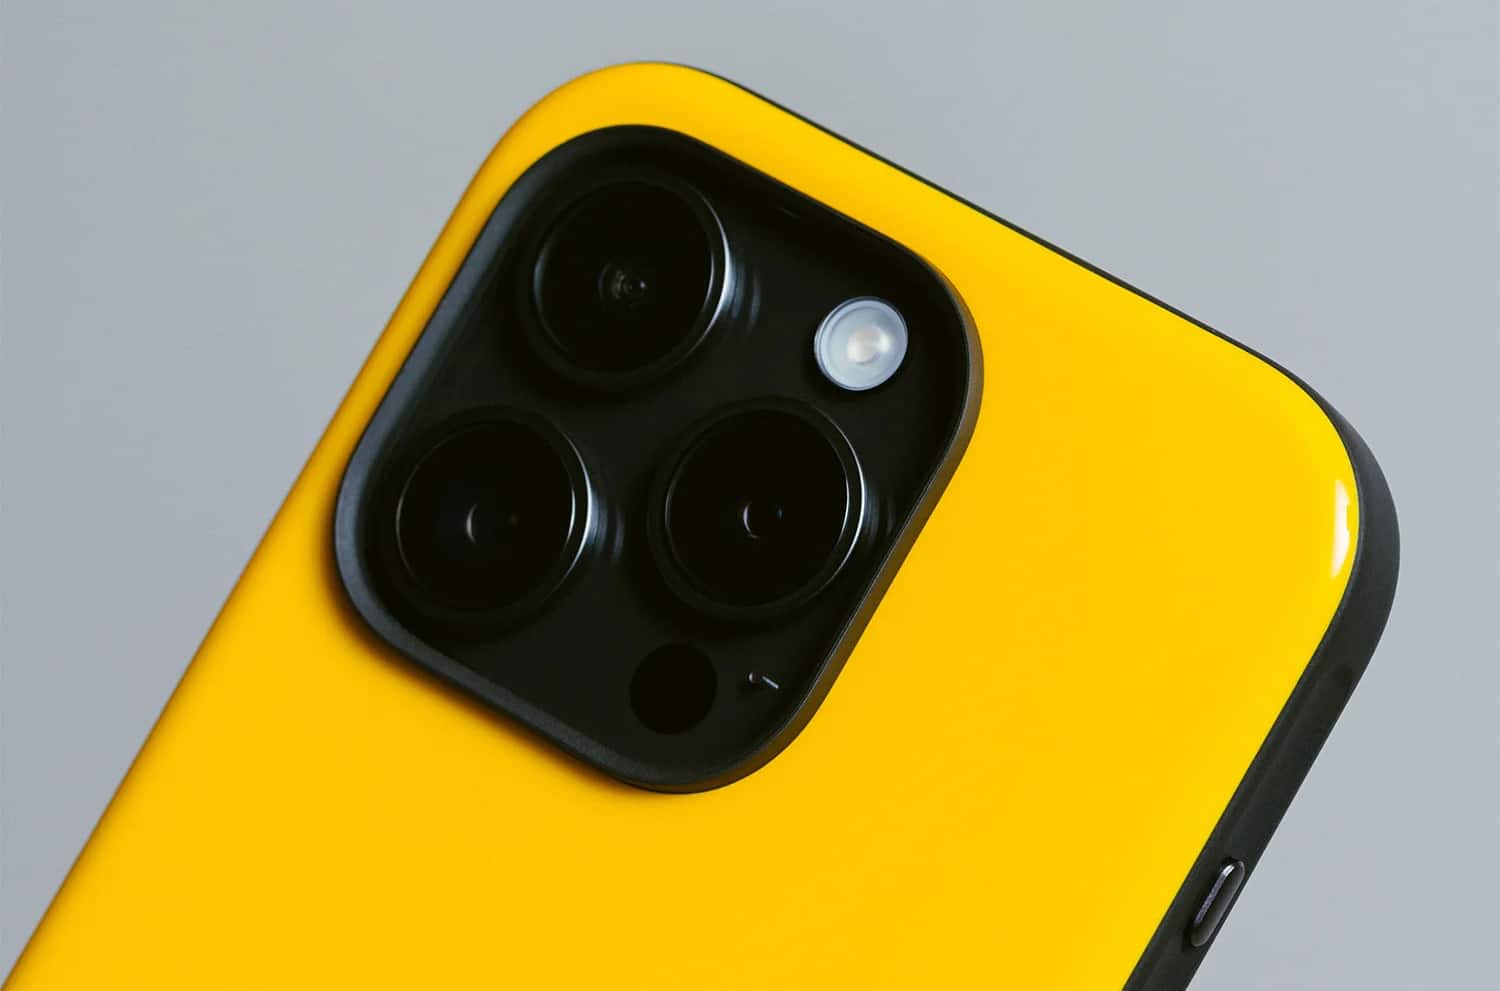 Detailaufnahme des Nomad Sport Cases in Racing Yellow vor grauem Hintergrund